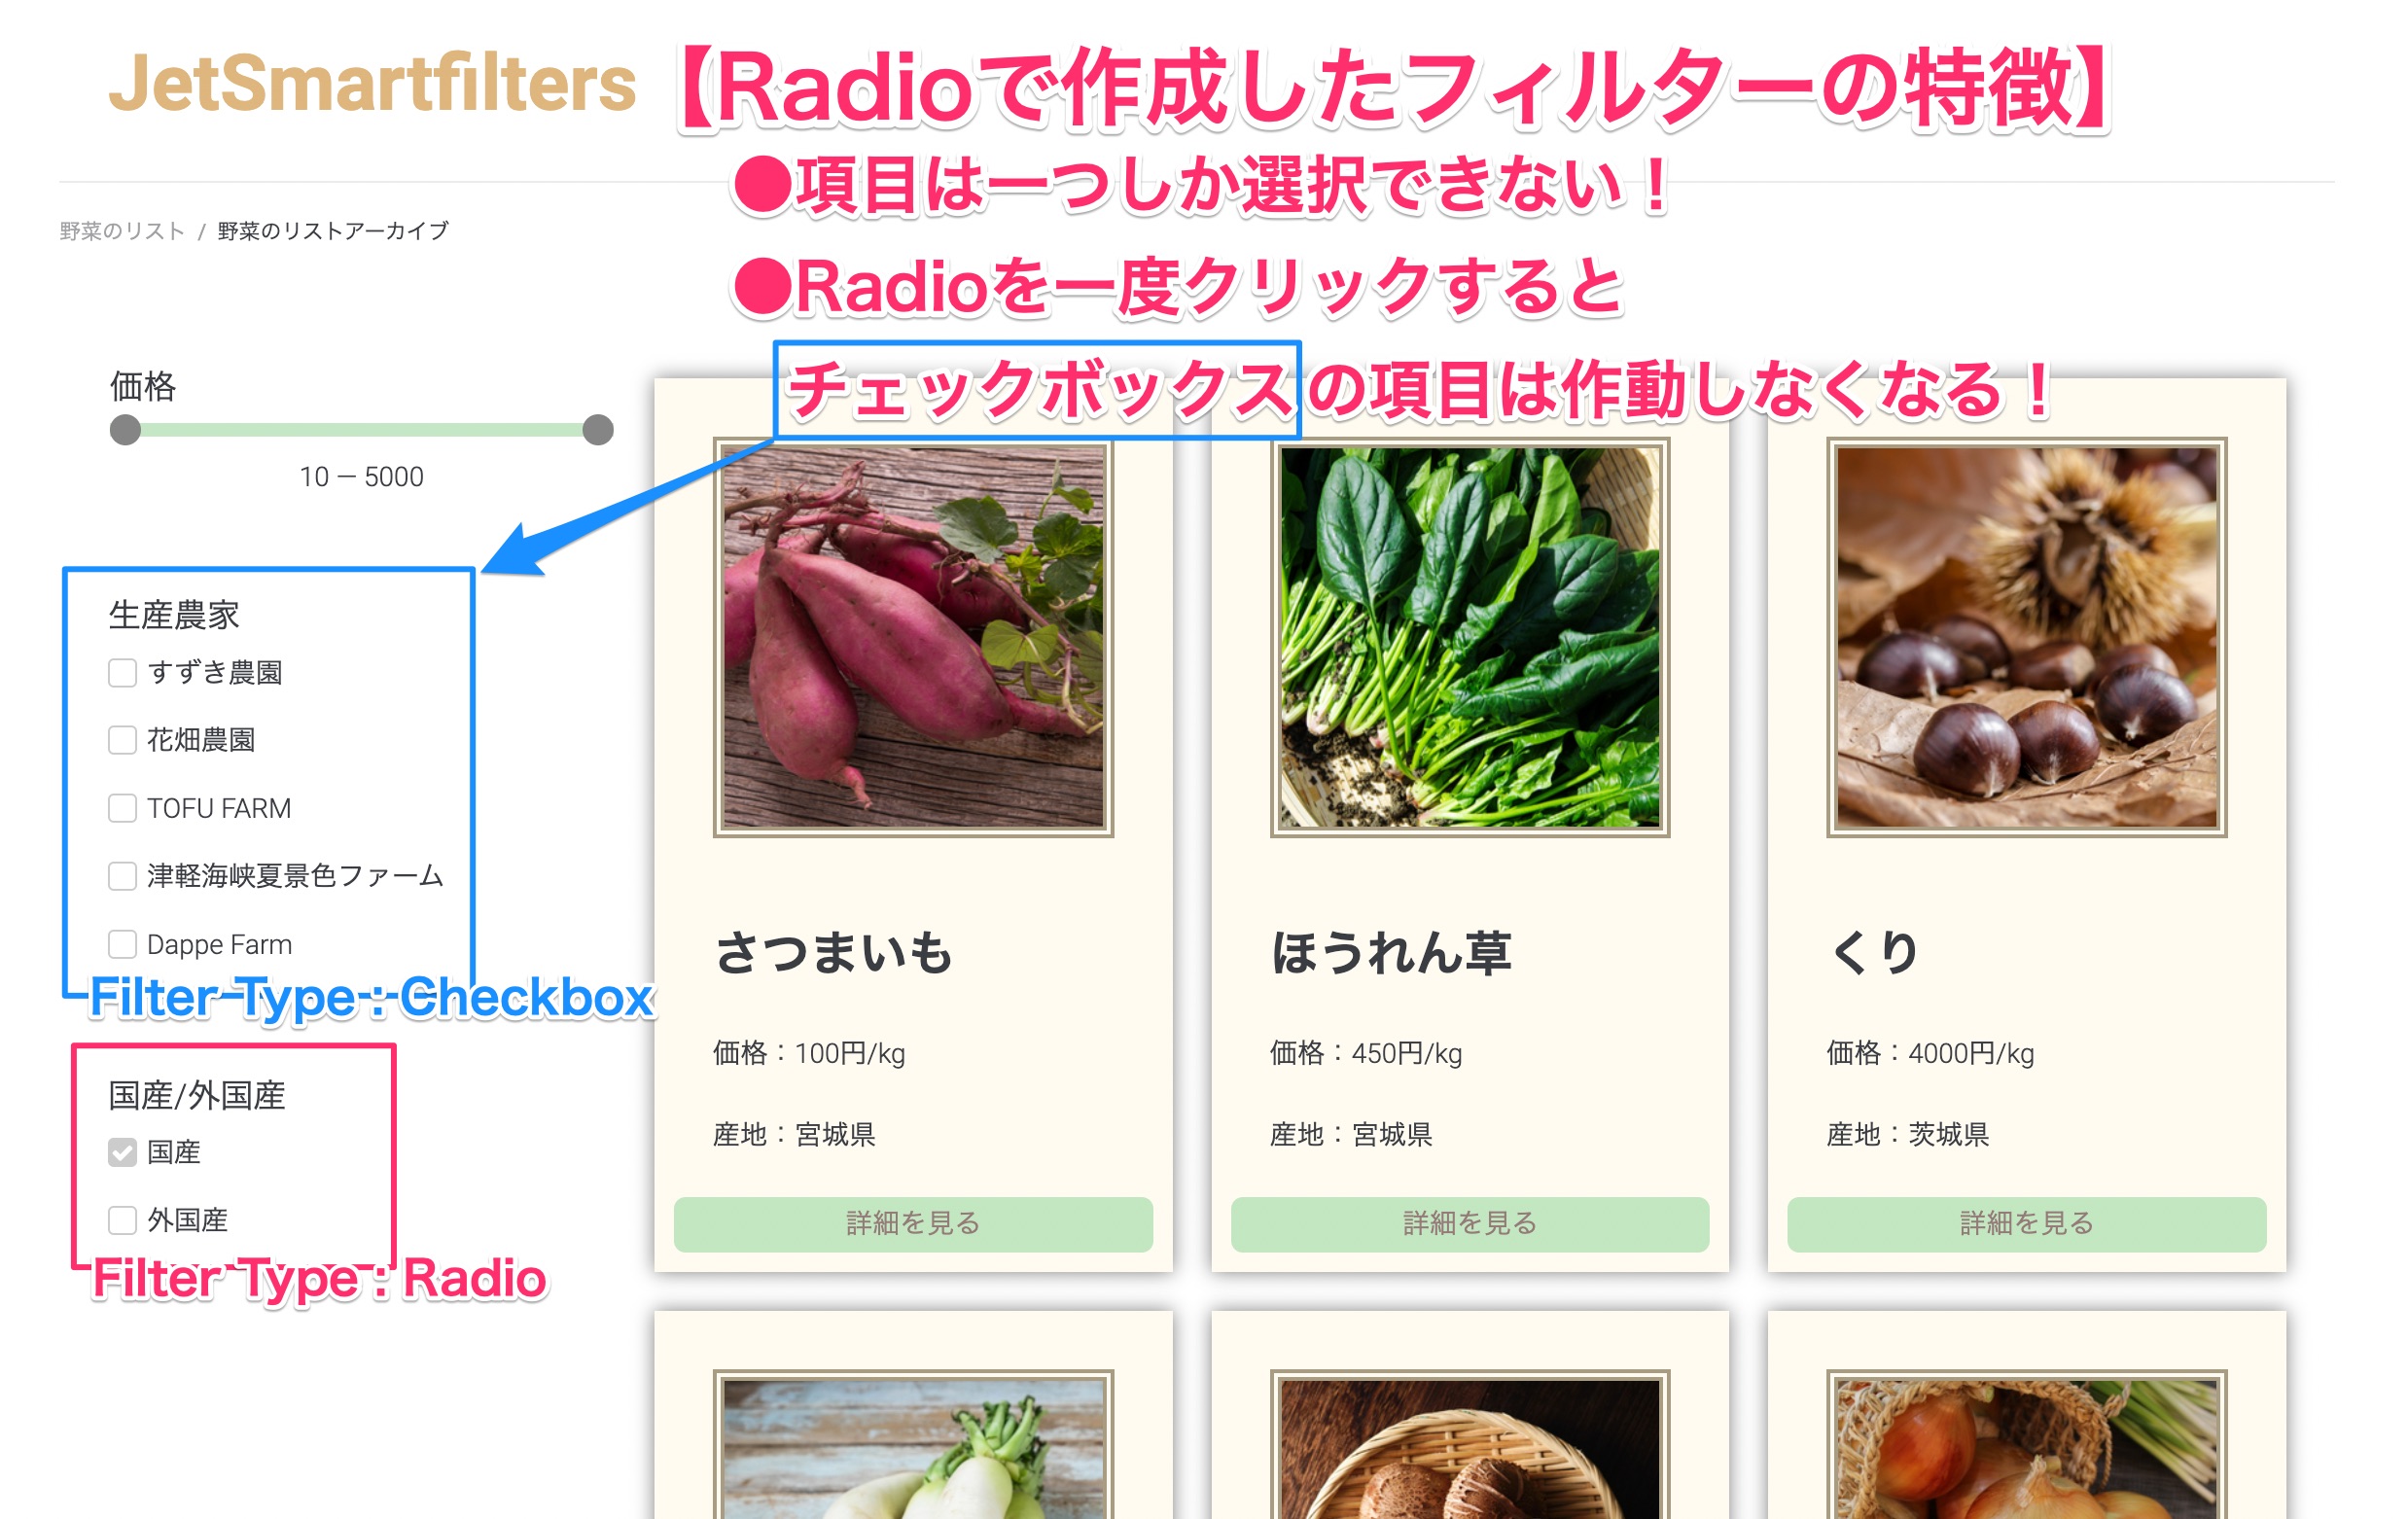 Radioで作成したフィルターの特徴を示した画面